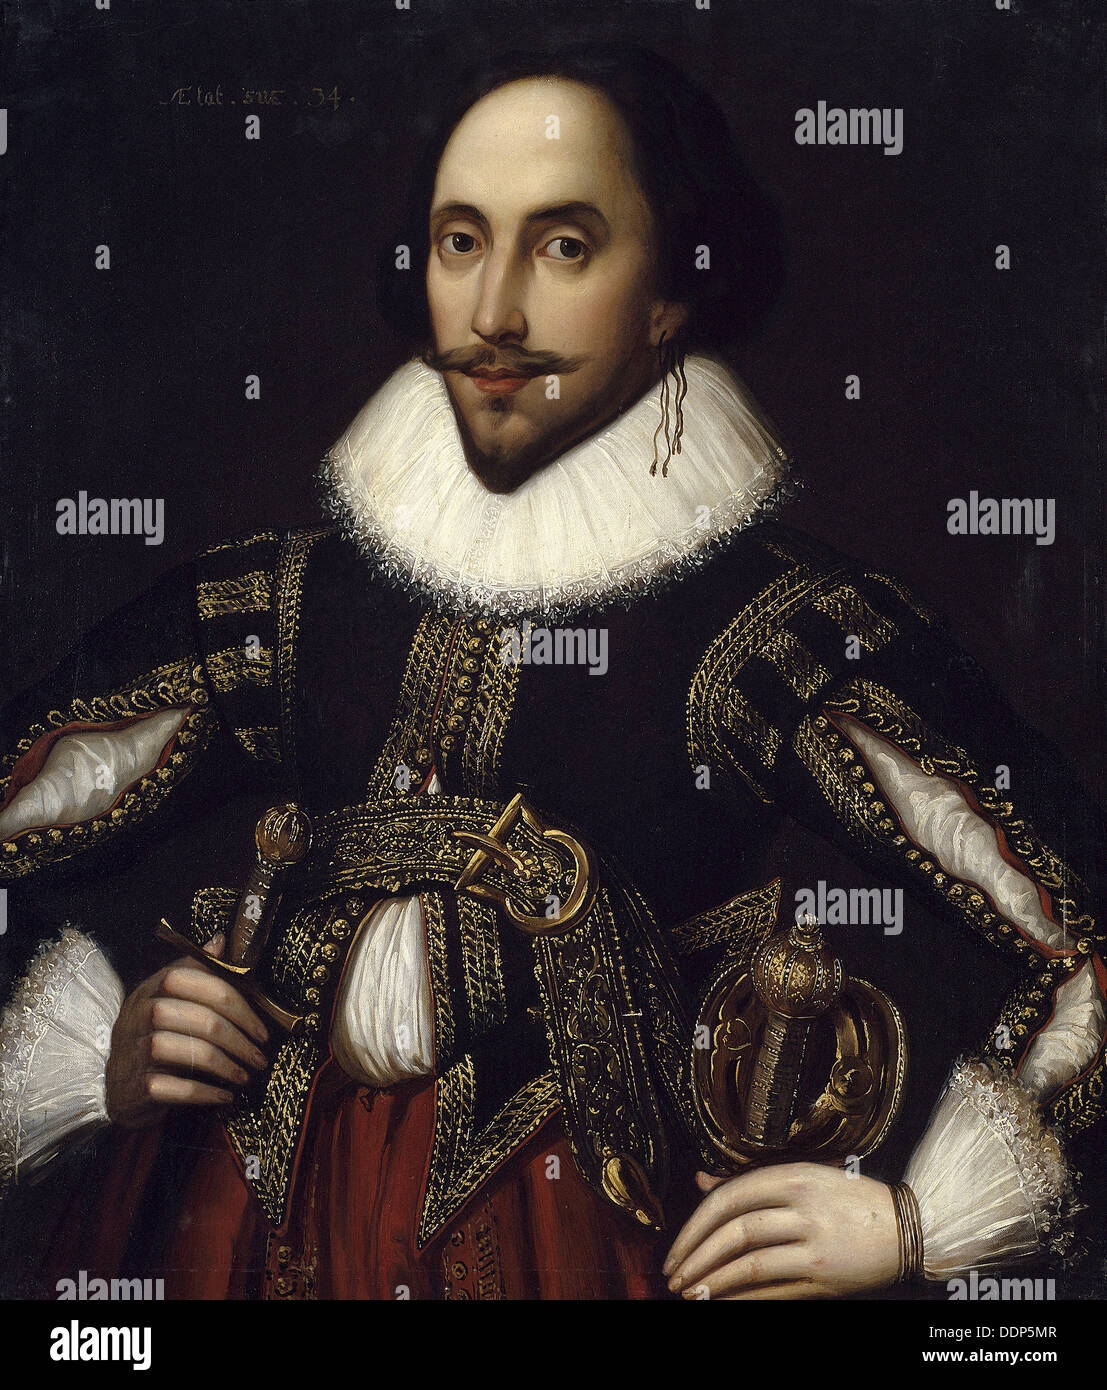 Anonym - Porträt von William Shakespeare - Versailles-Museum Stockfoto